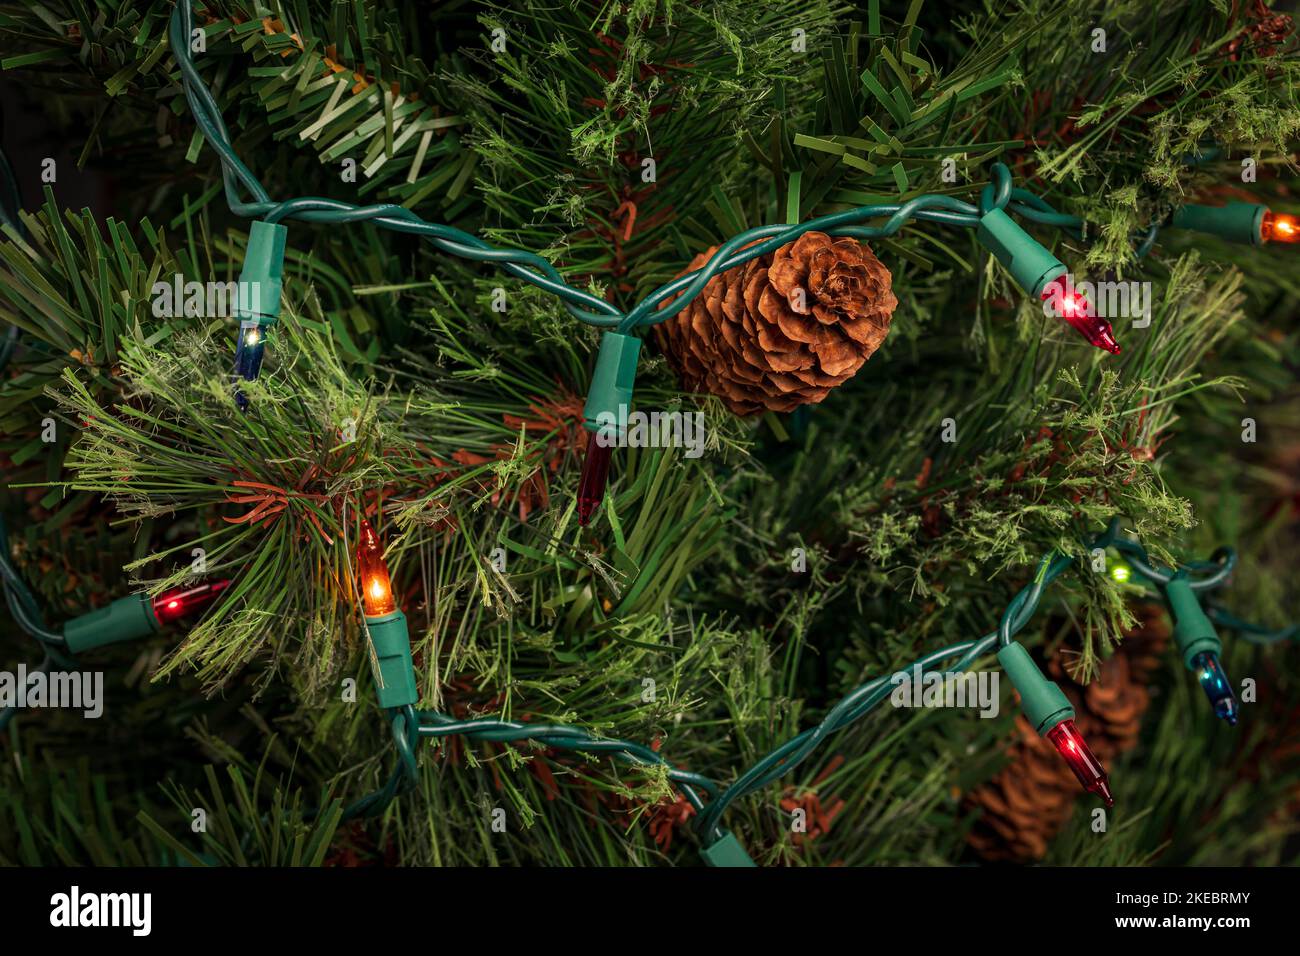 Weihnachtsschnur Lichter mit schlechten Glühbirne auf Weihnachtsbaum. Feiertagsbeleuchtung Reparatur, Sicherheit und Dekoration Konzept. Stockfoto